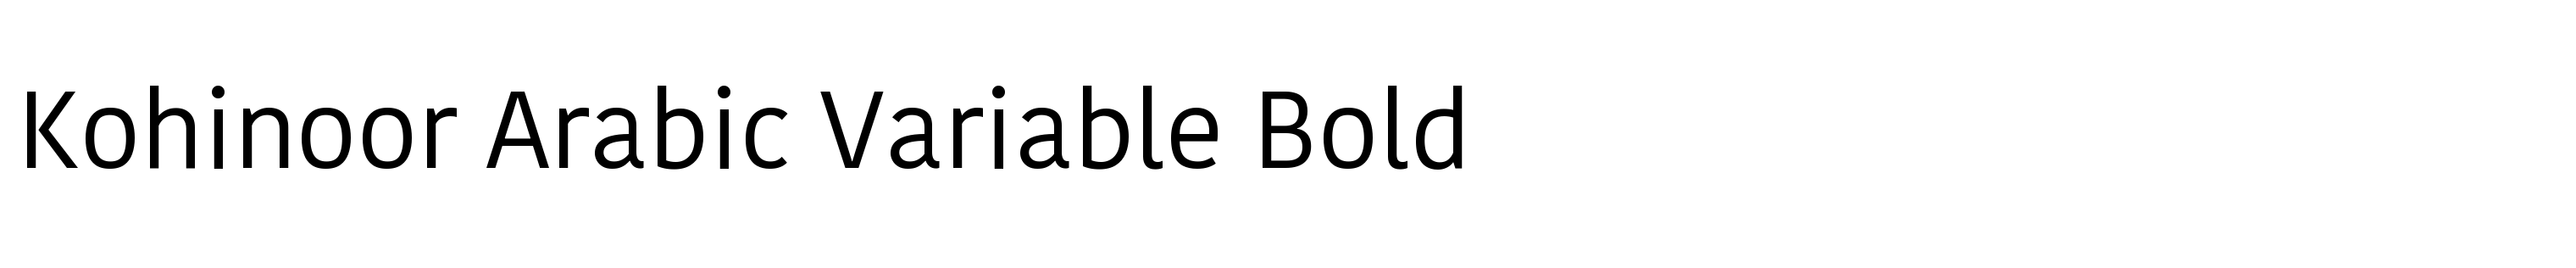 Kohinoor Arabic Variable Bold